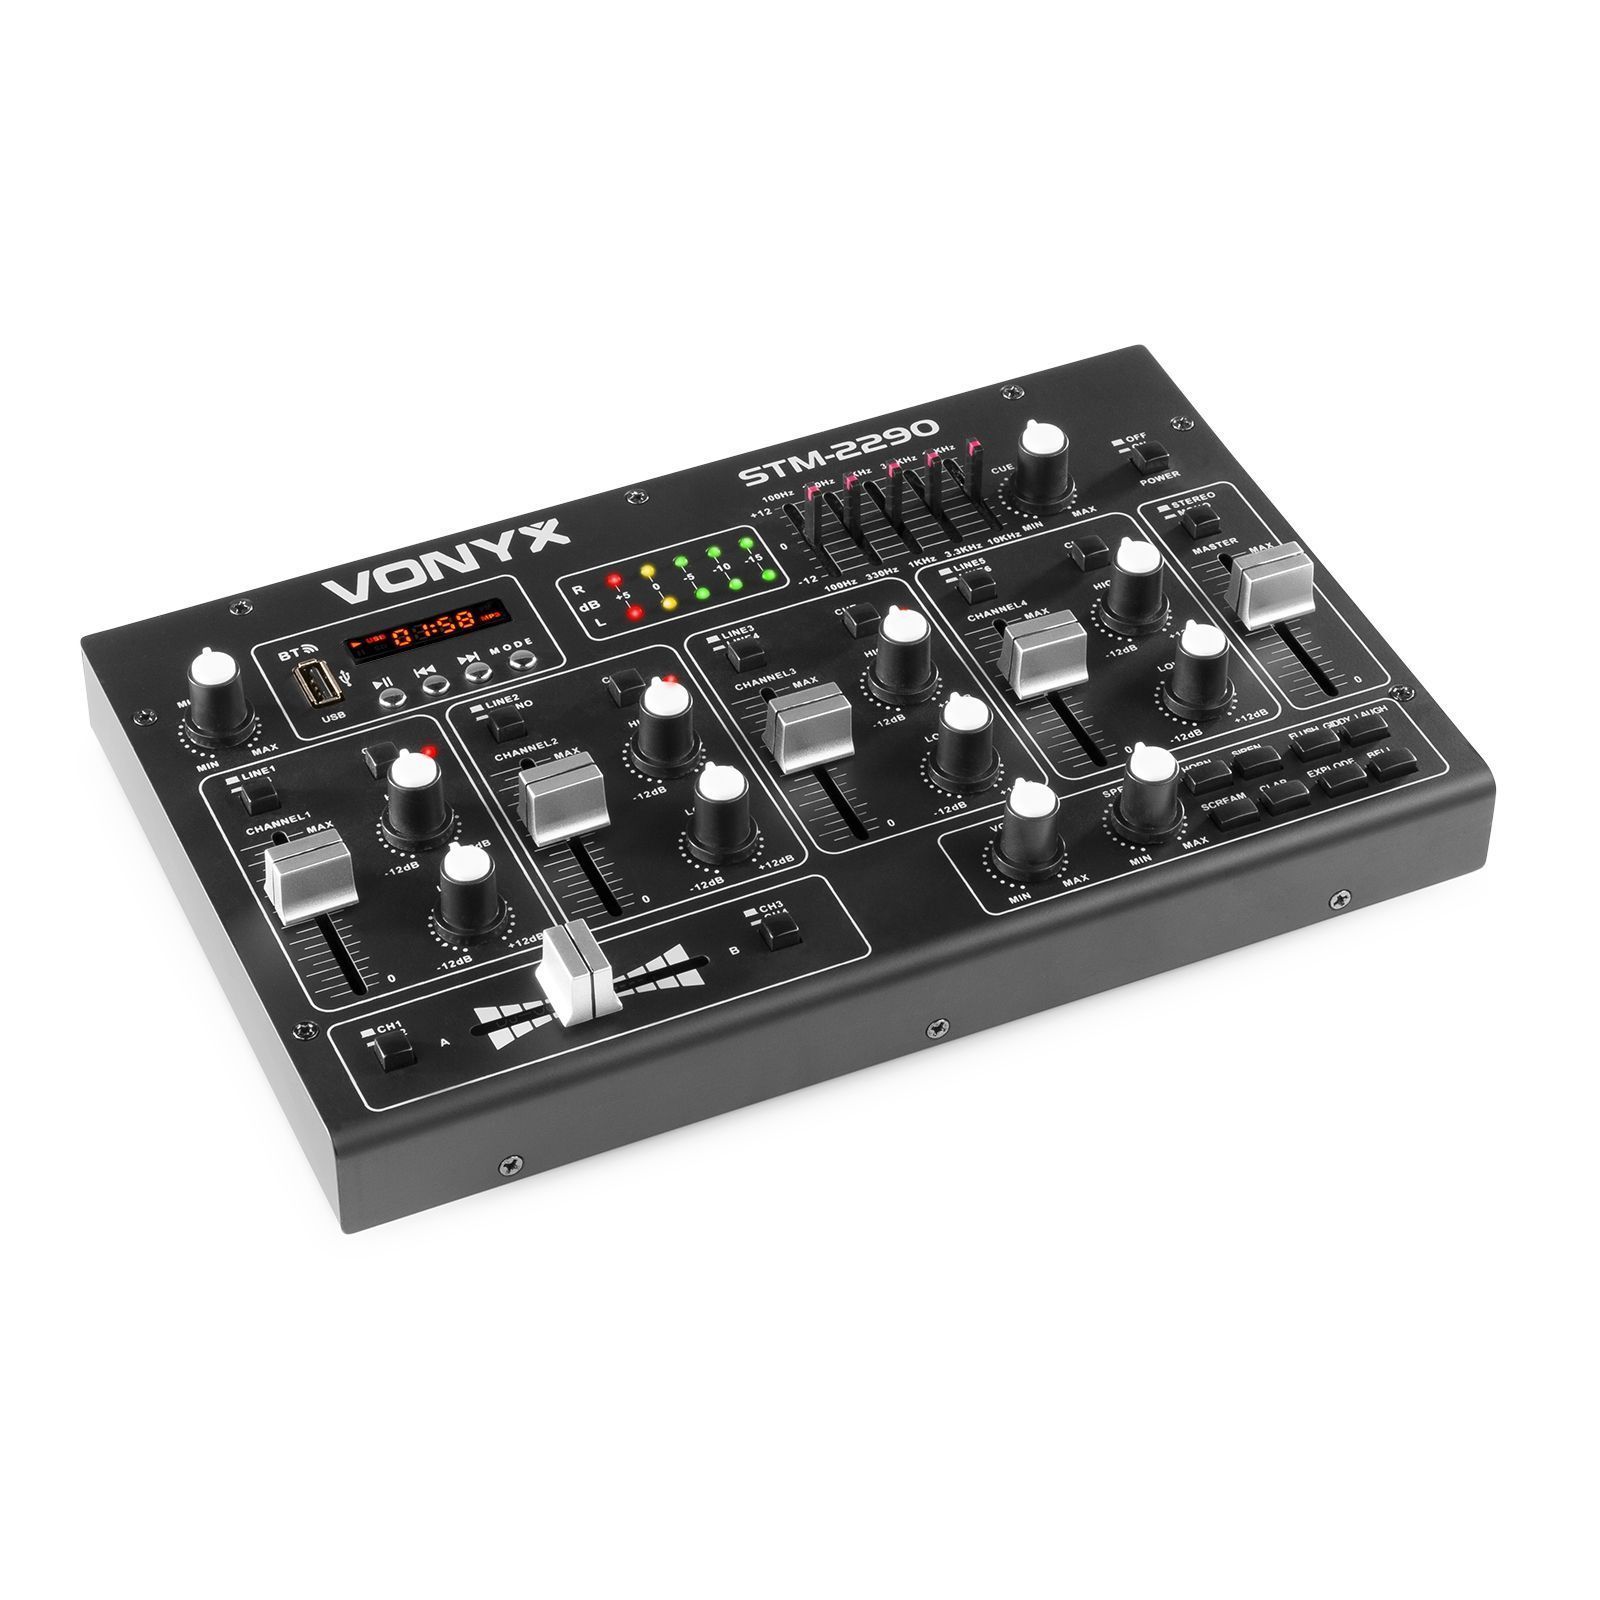 Vonyx STM2290 - Table de Mixage DJ 8 canaux, entrée USB et SD, Bluetooth